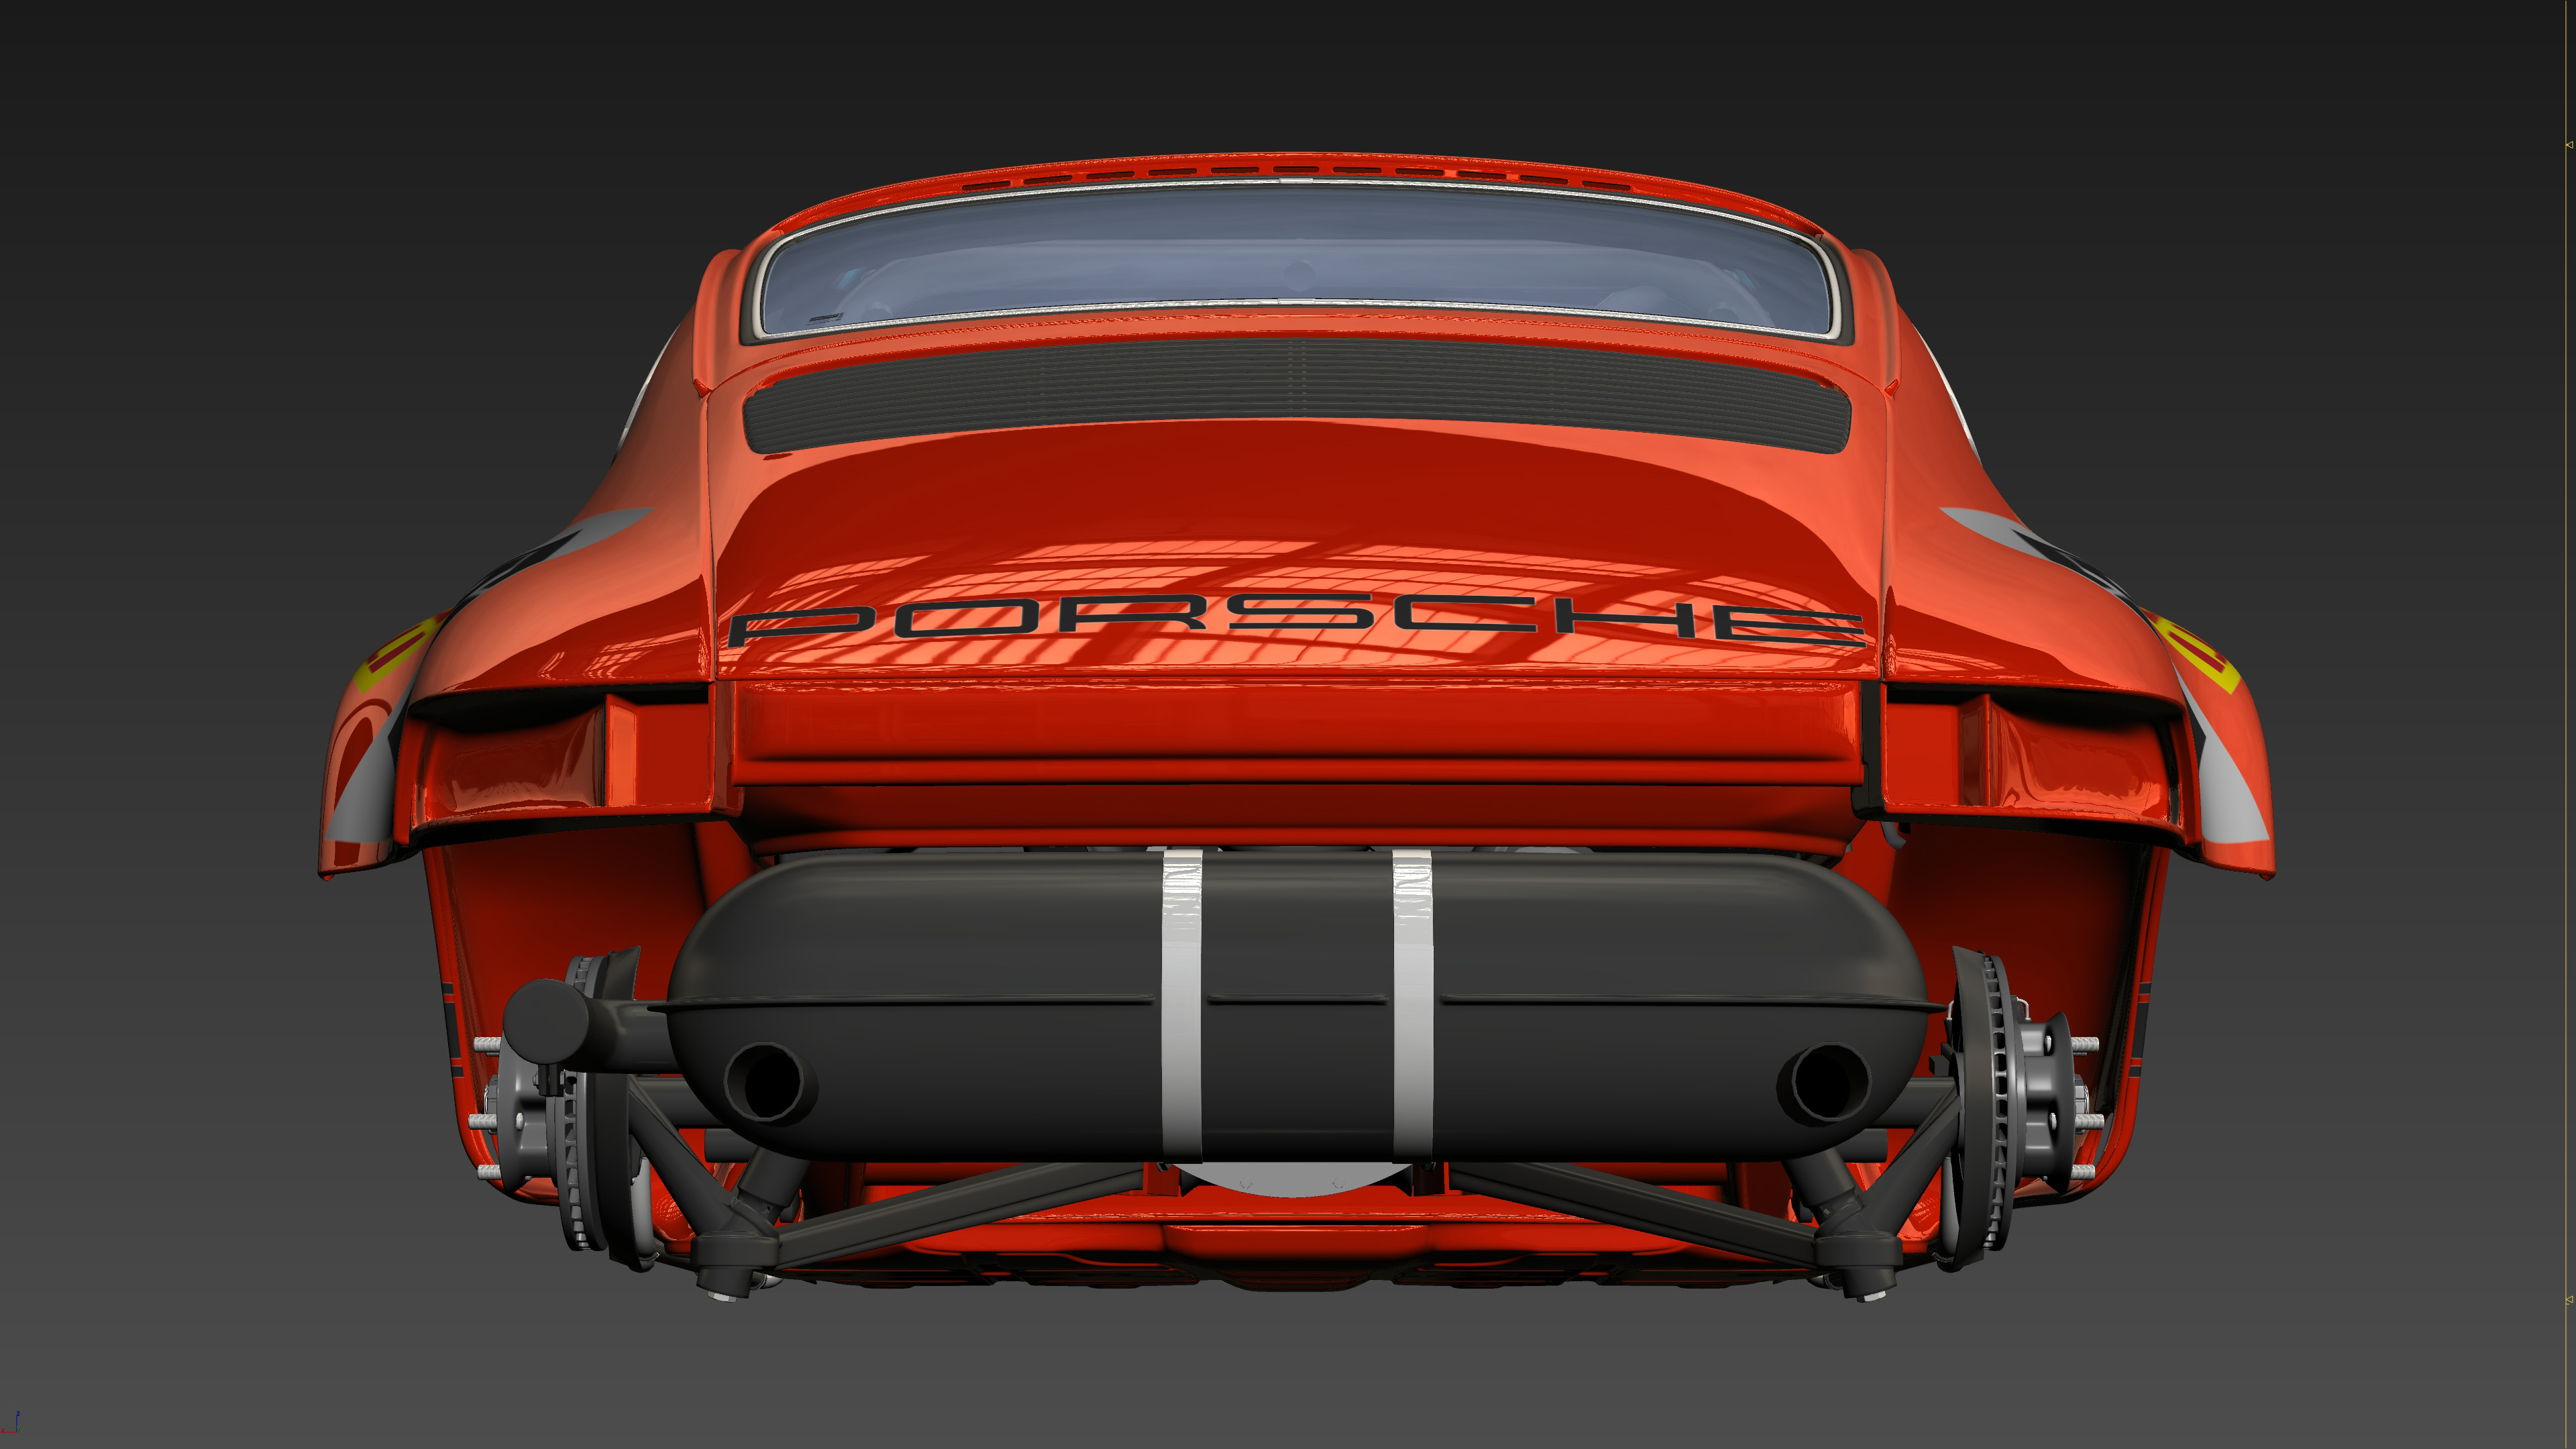 The Legend of 7707KW - Polskie Porsche - Car render challenge 2020